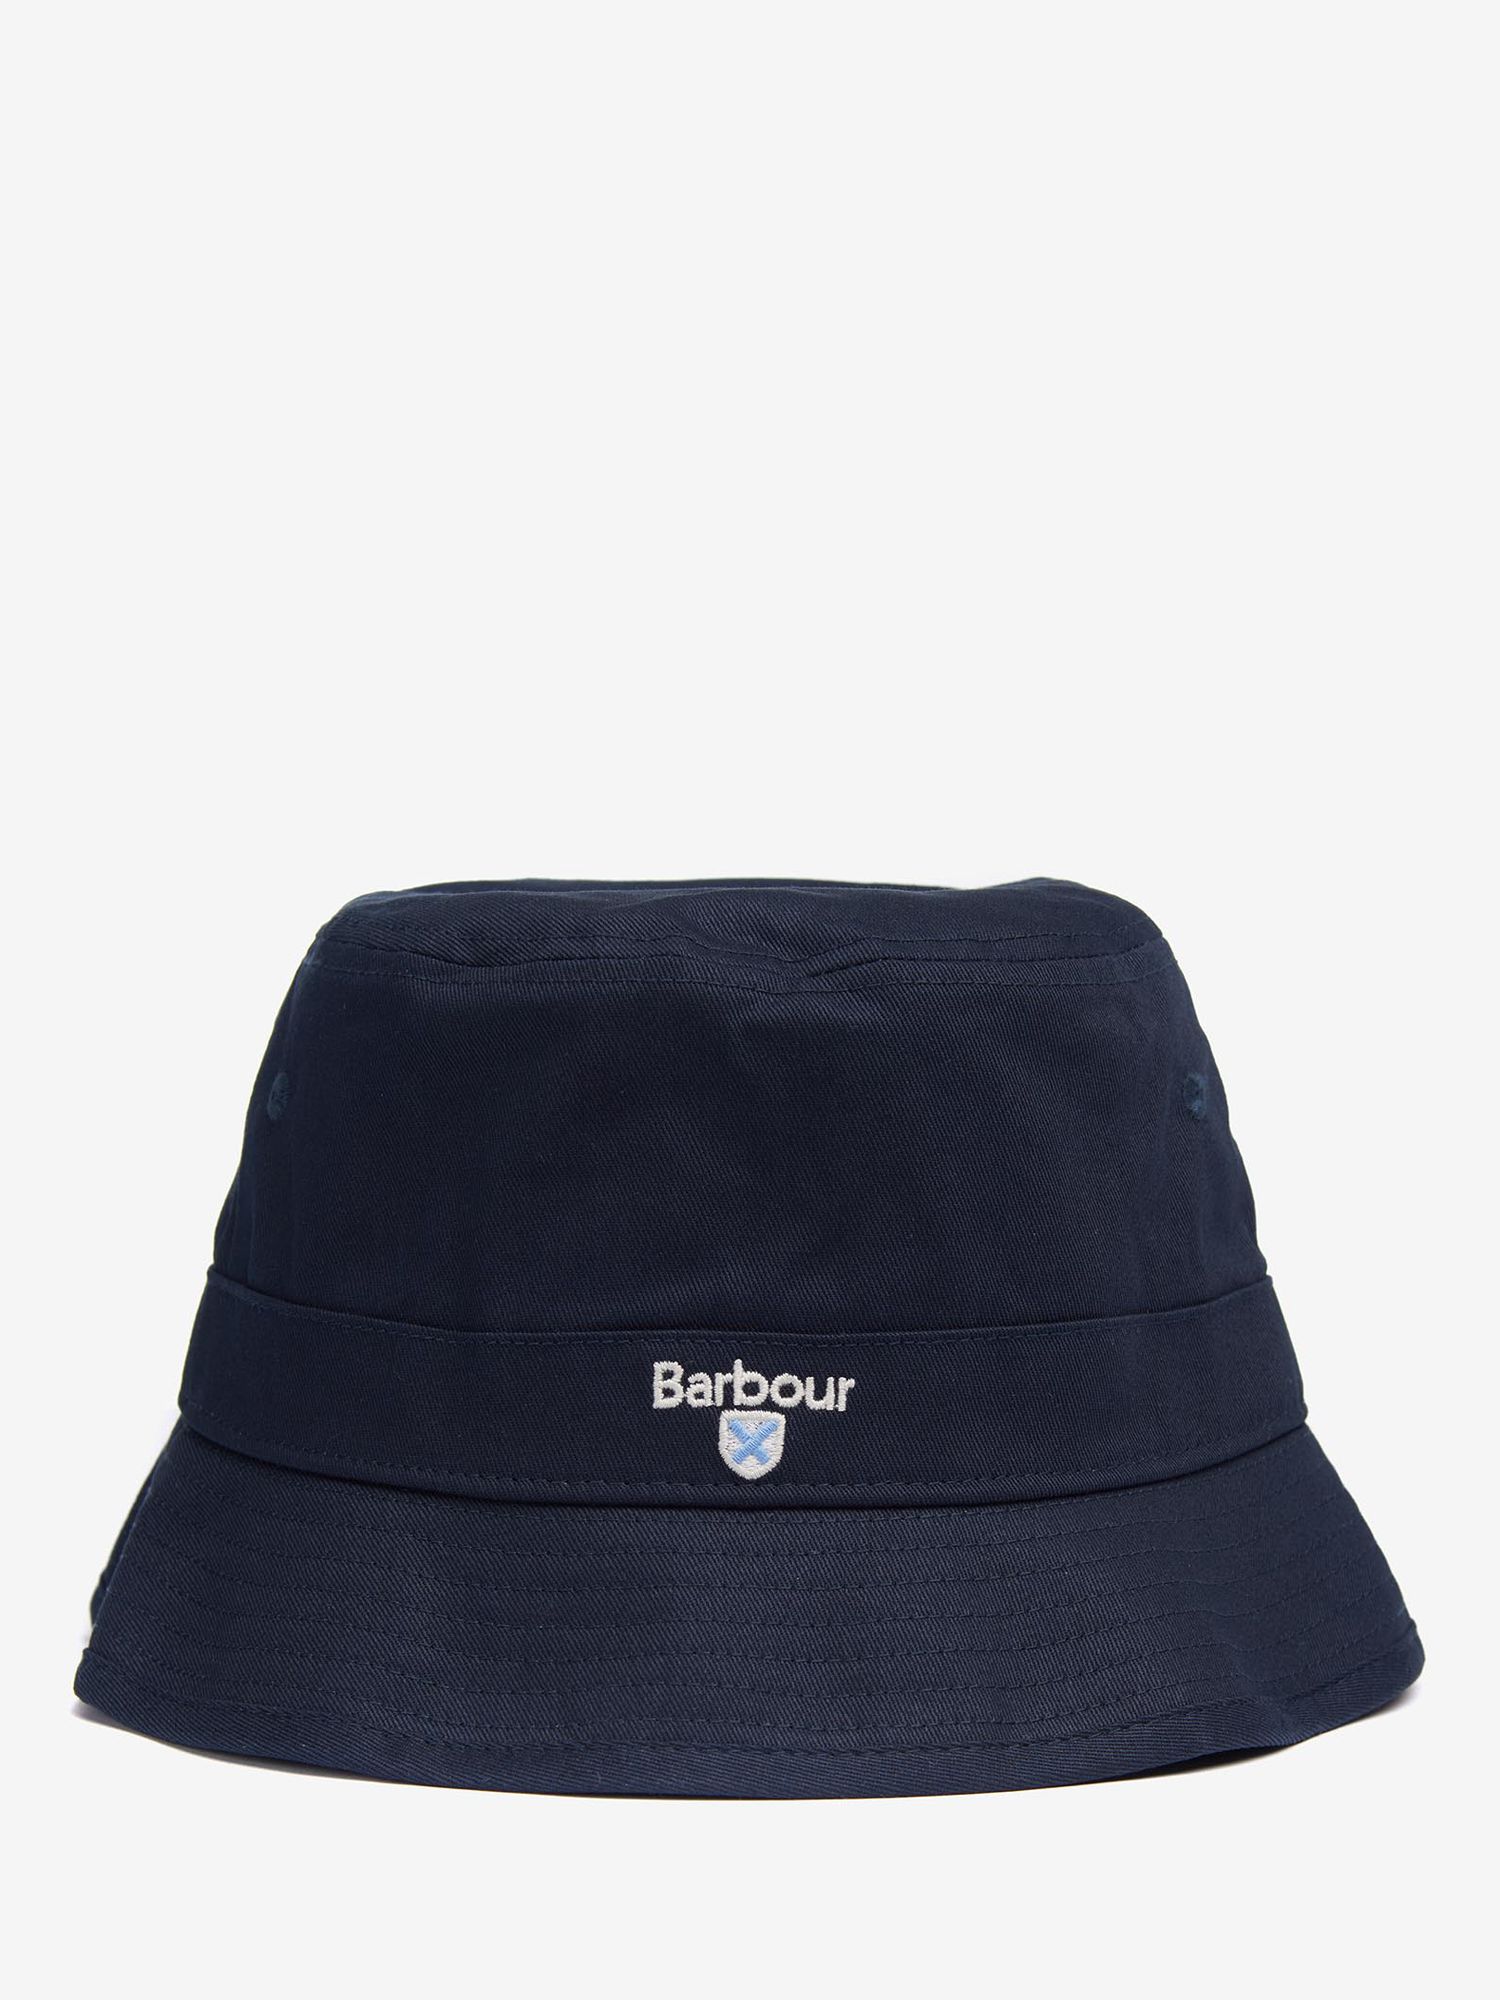 Barbour Classic Bucket Hat, Navy, M